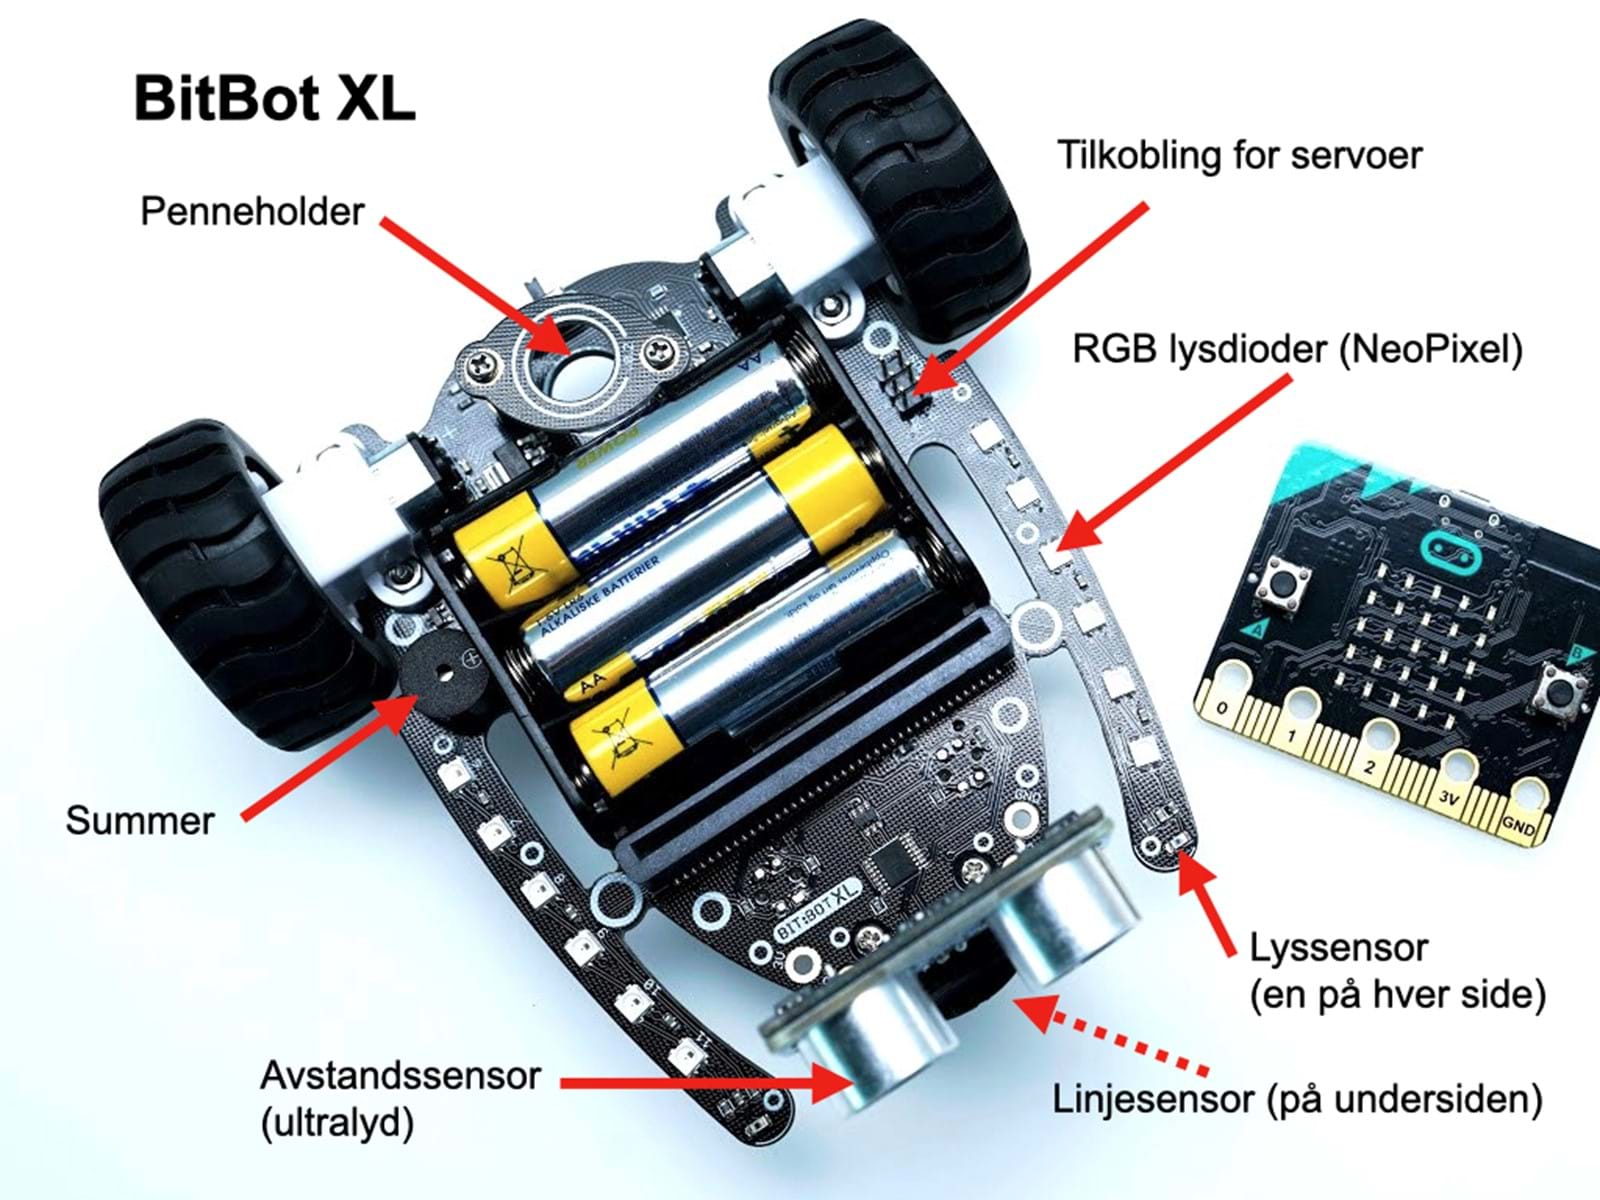 BitBot XL har mange sensorer og tilbehør